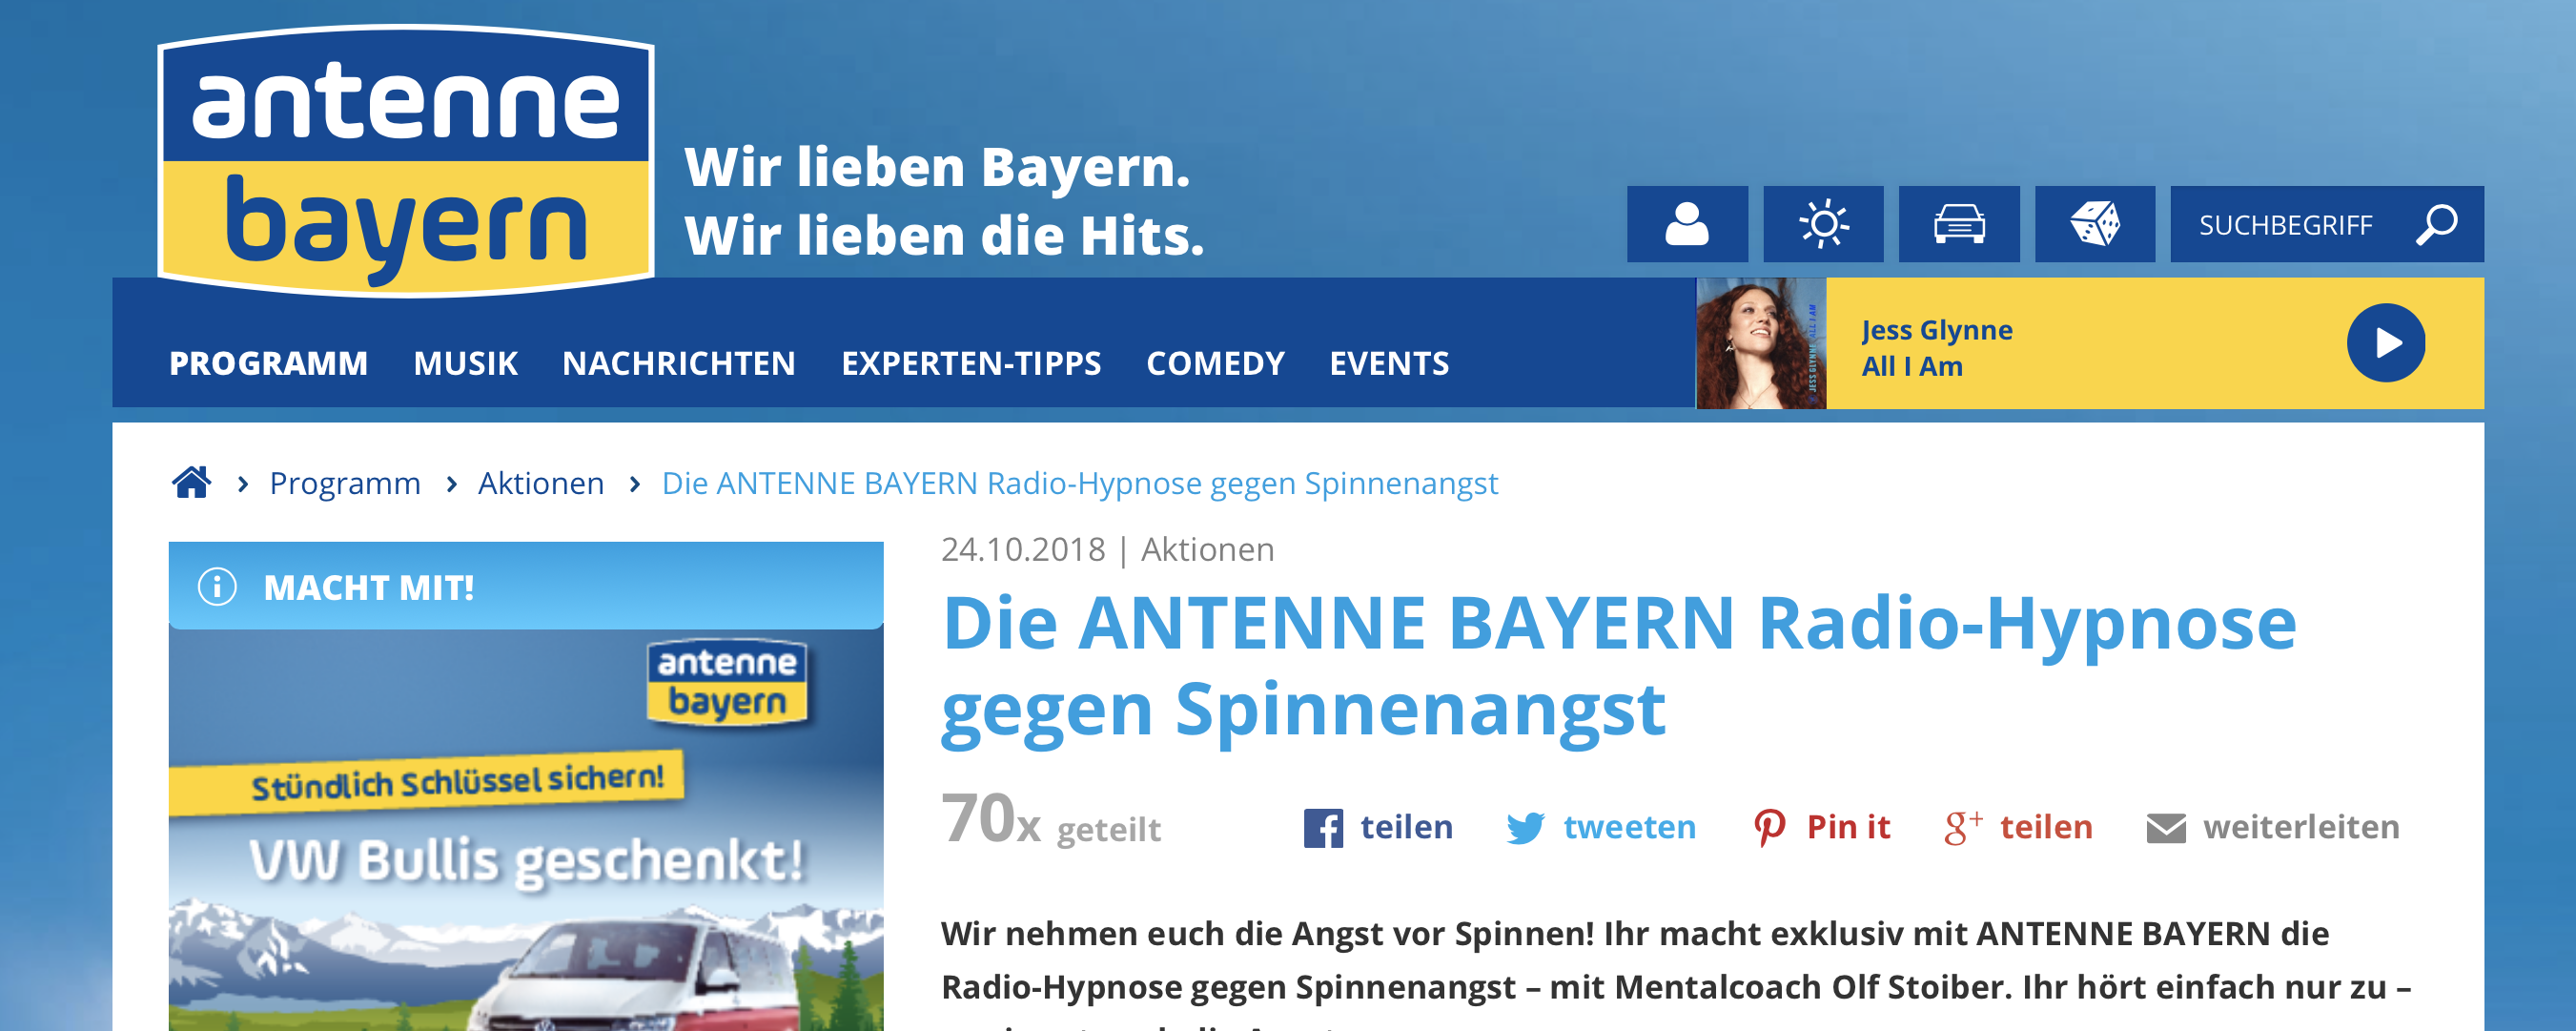 Antenne Bayern und seine „Radio-Hypnose gegen Spinnenangst”